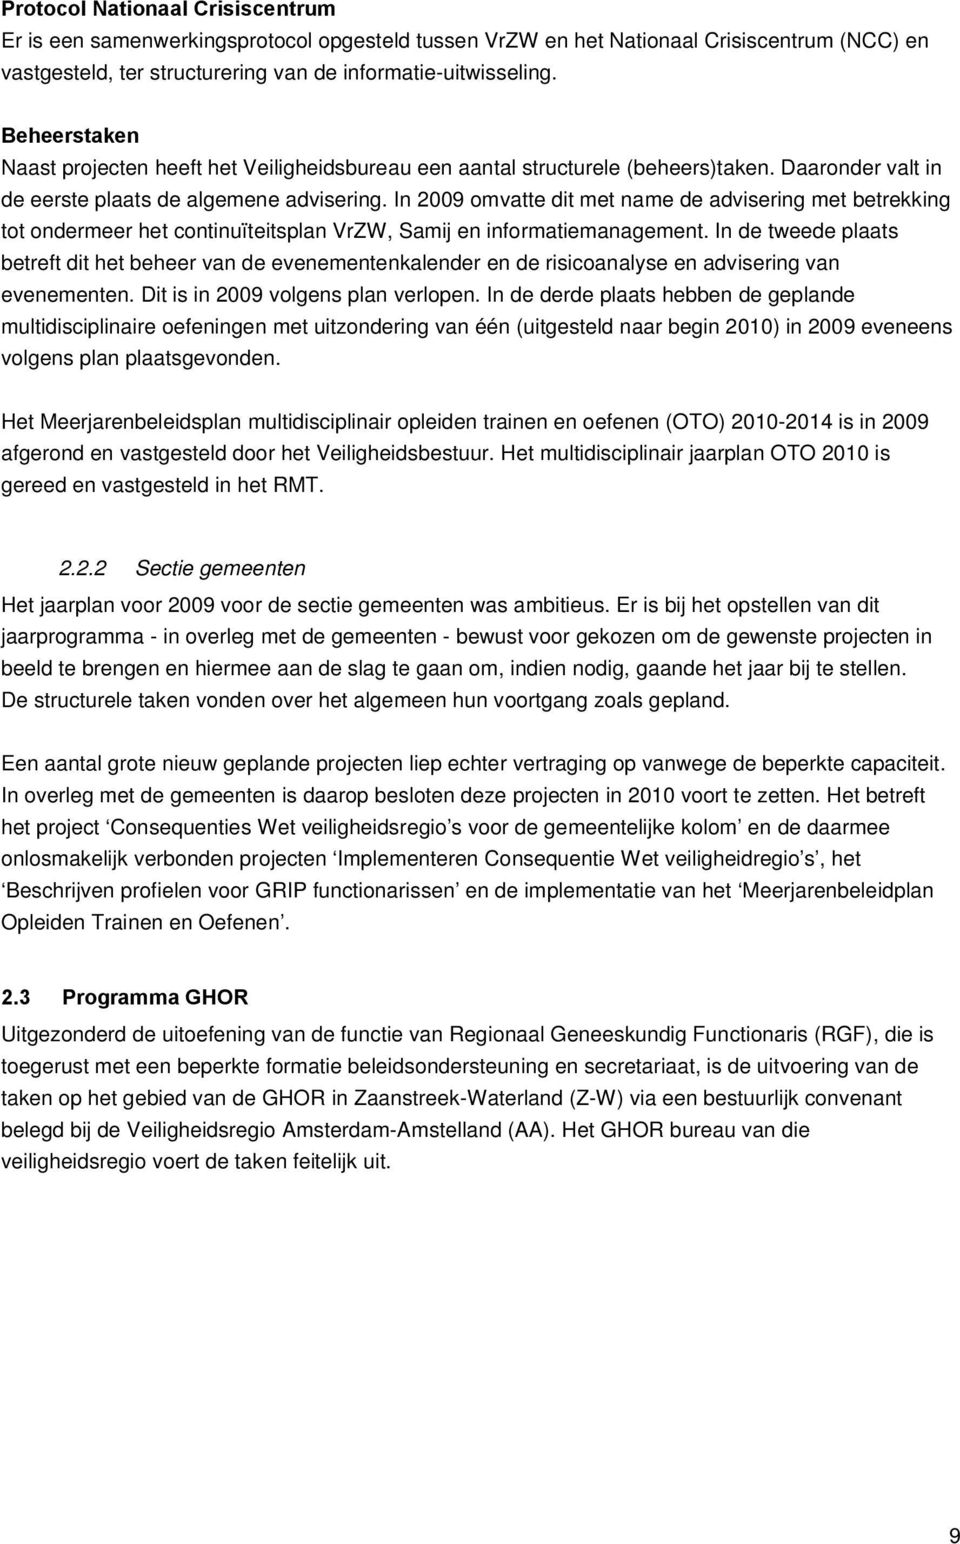 In 2009 omvatte dit met name de advisering met betrekking tot ondermeer het continuïteitsplan VrZW, Samij en informatiemanagement.